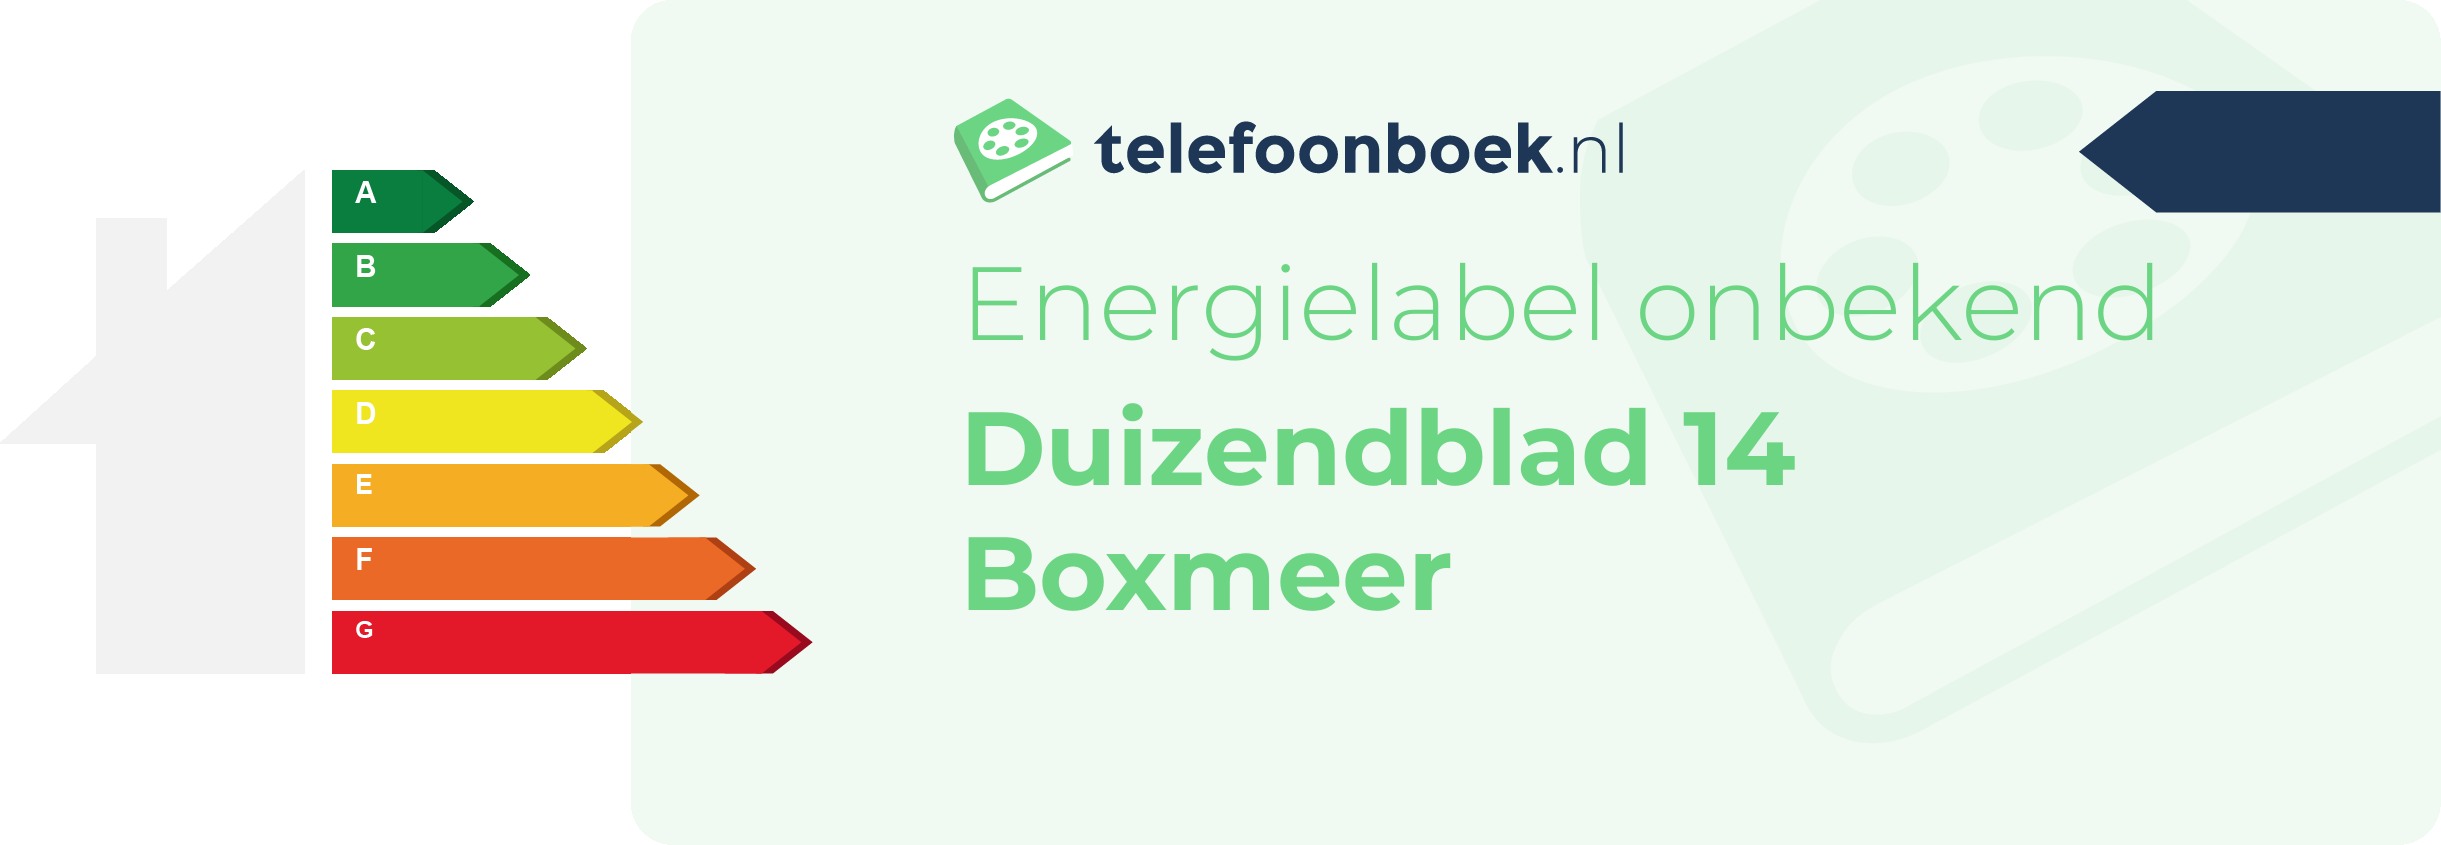 Energielabel Duizendblad 14 Boxmeer